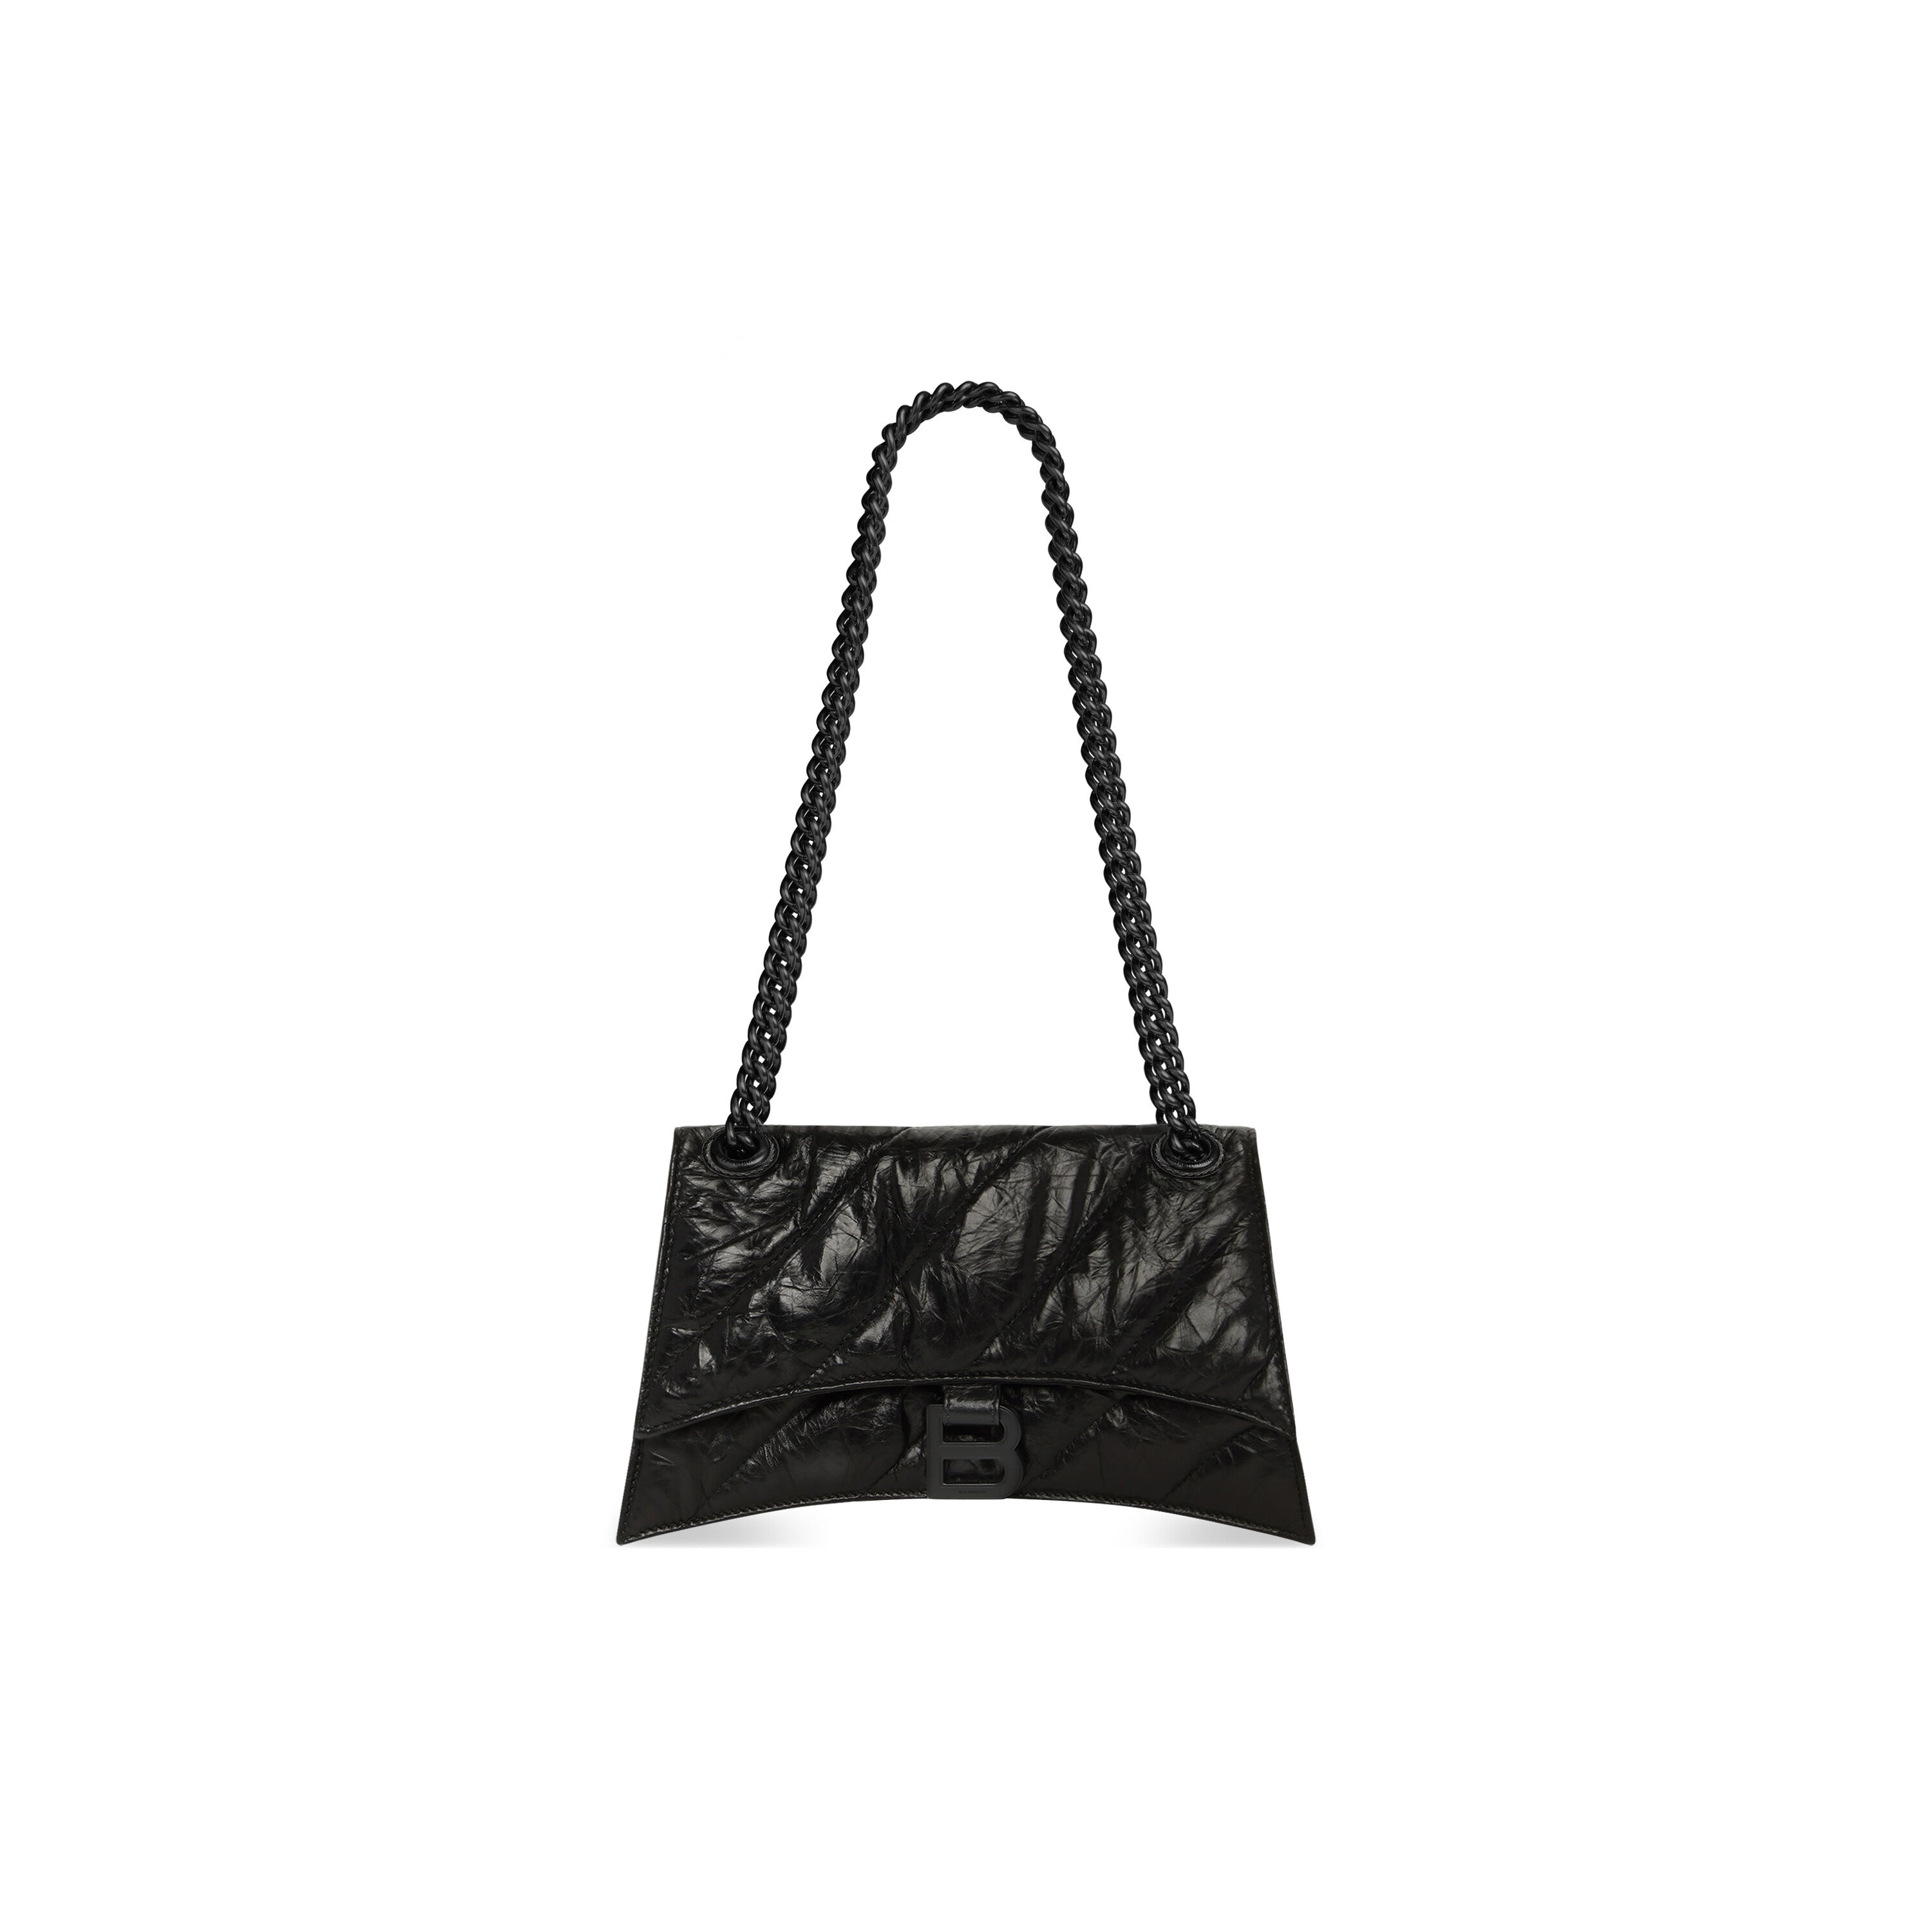 BALENCIAGA[バレンシアガ] / CRUSH Small Chain Bag Black [クラッシュ スモール チェーン バッグ]